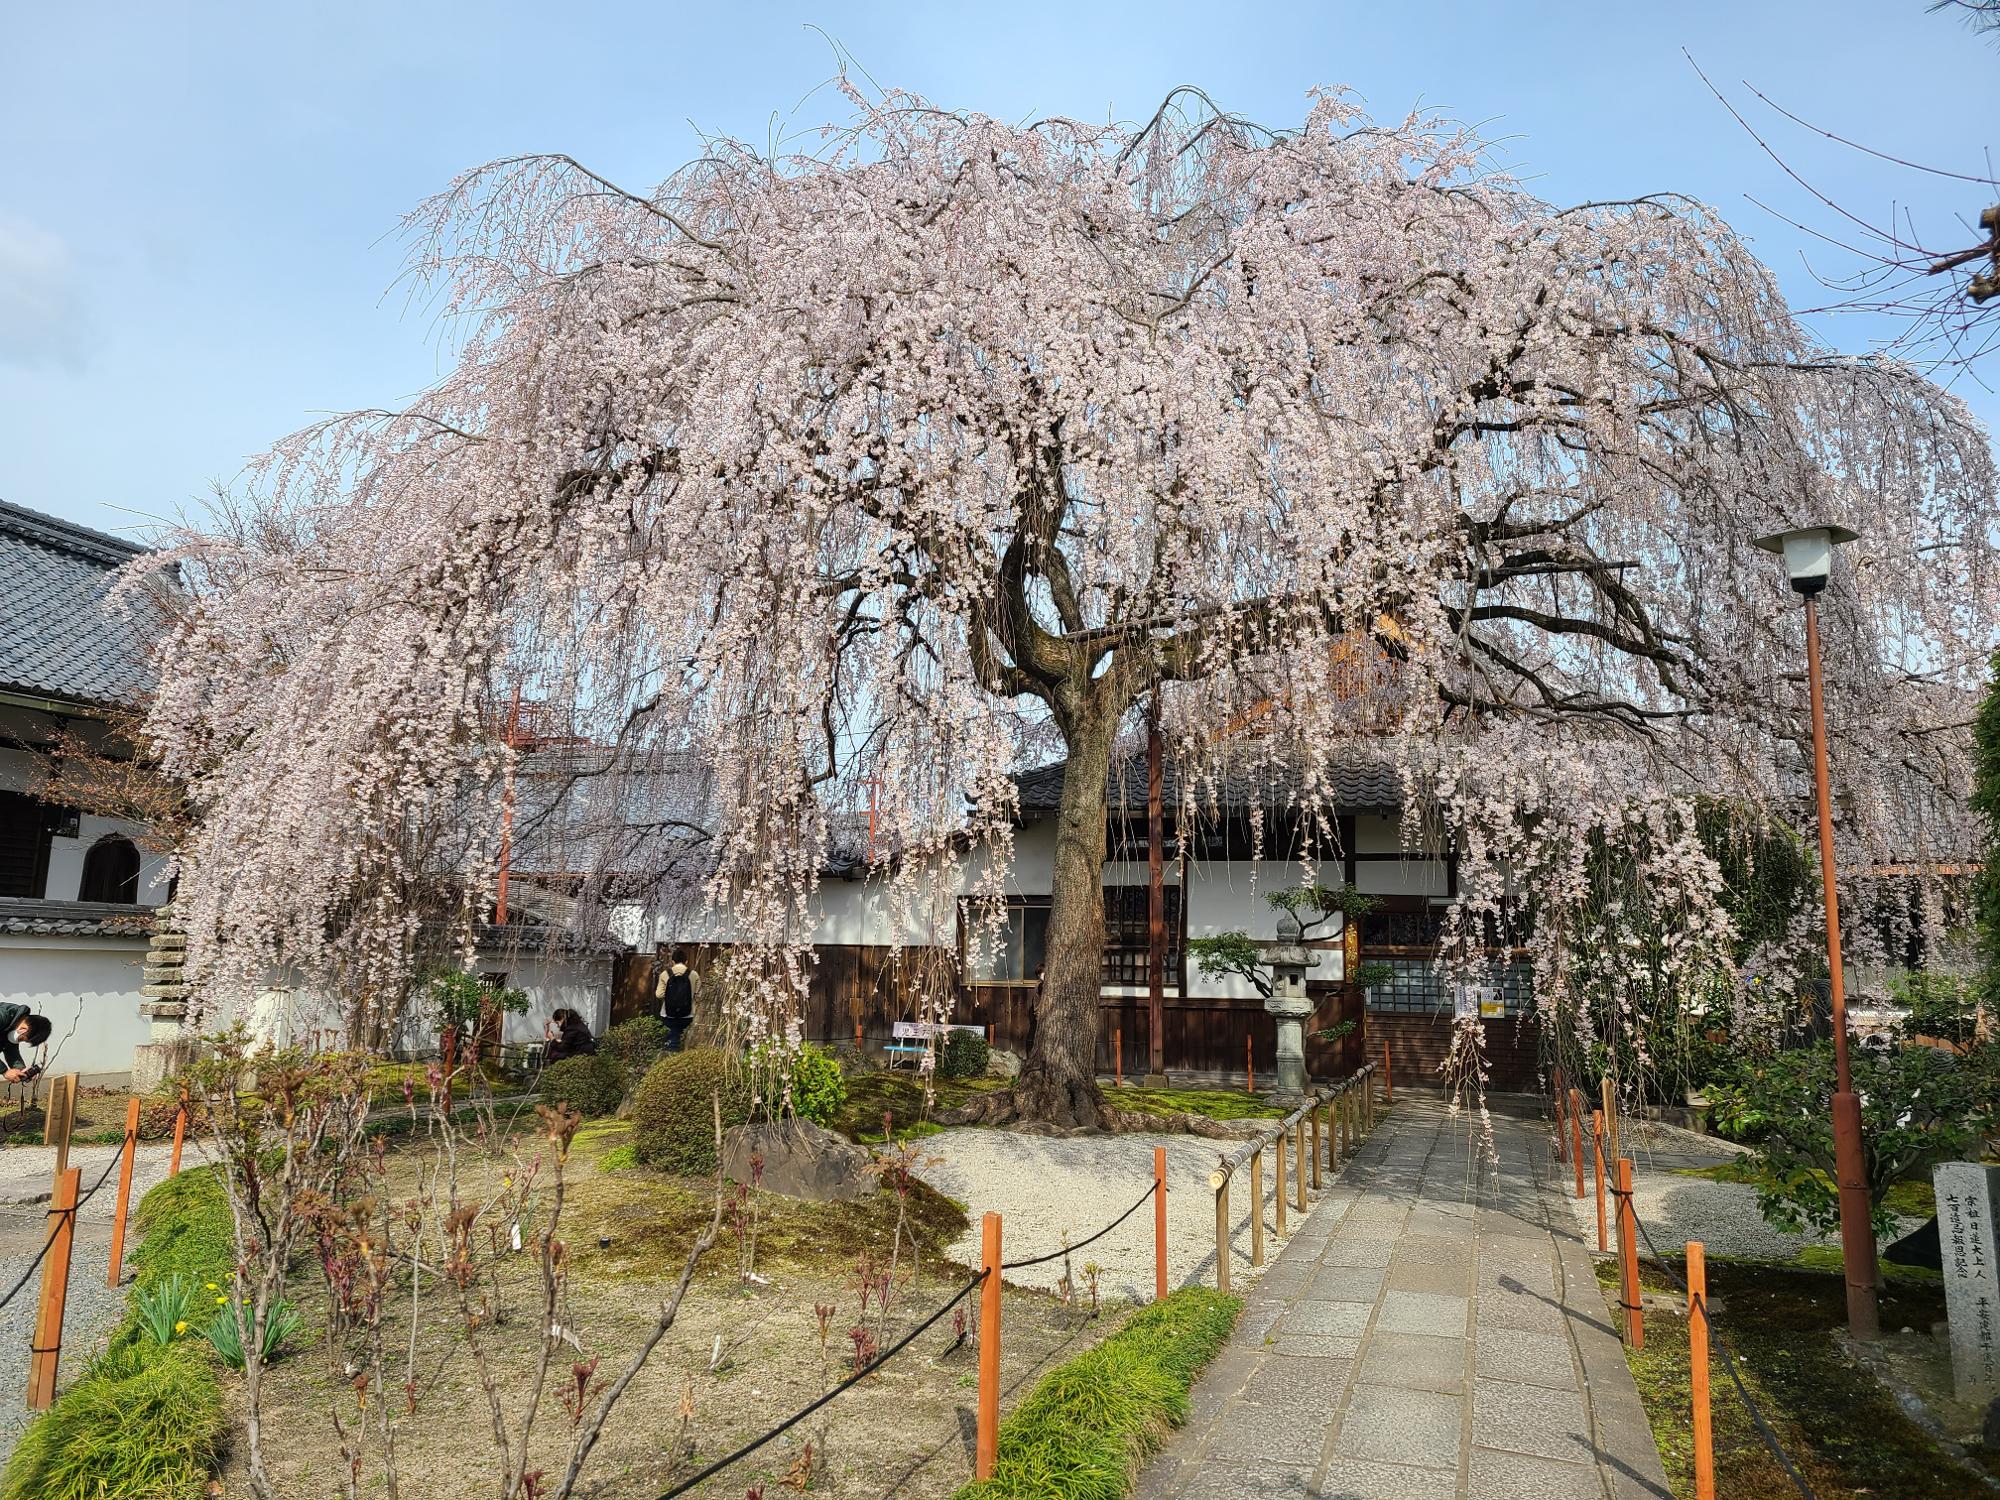 見事な大枝垂れ桜